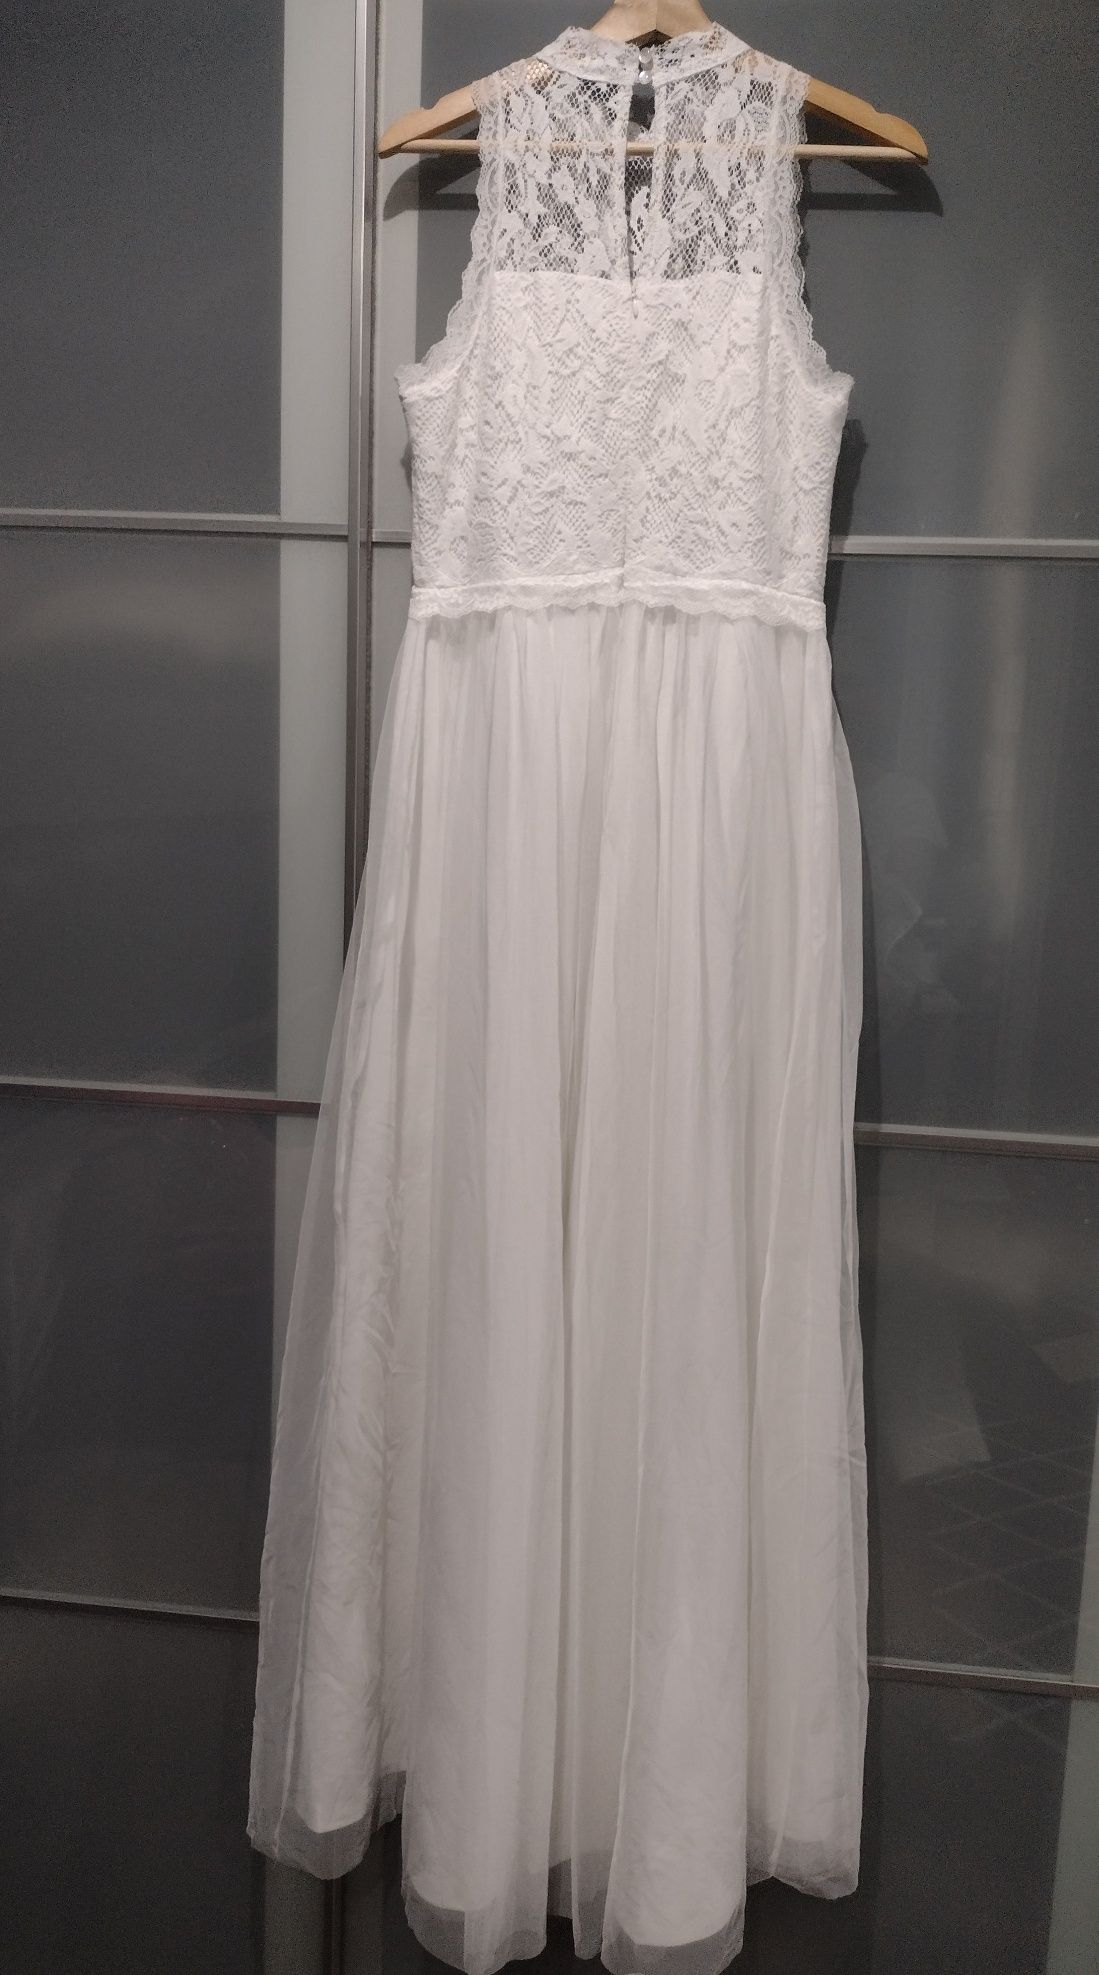 Nowa suknia ślubna śmietankowa 38 40 koronka tiul cywilny poprawiny